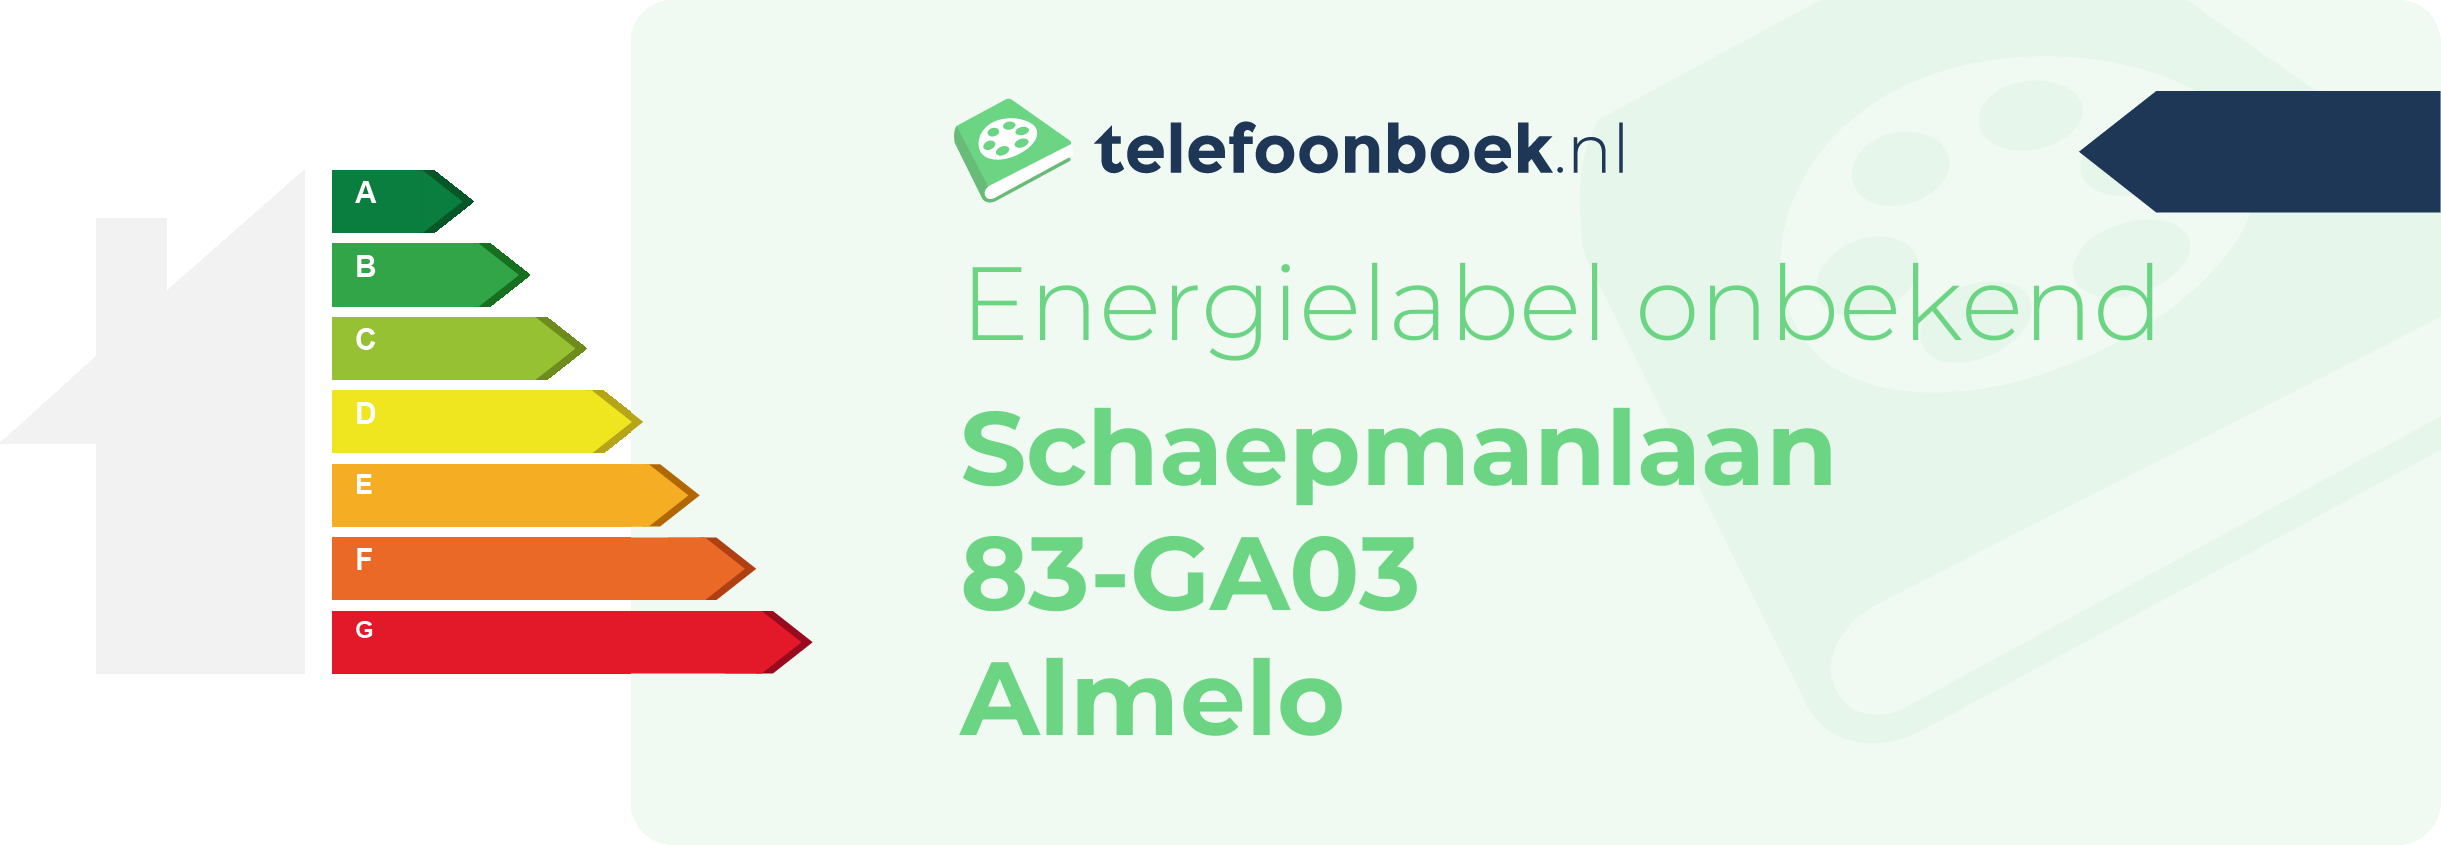 Energielabel Schaepmanlaan 83-GA03 Almelo